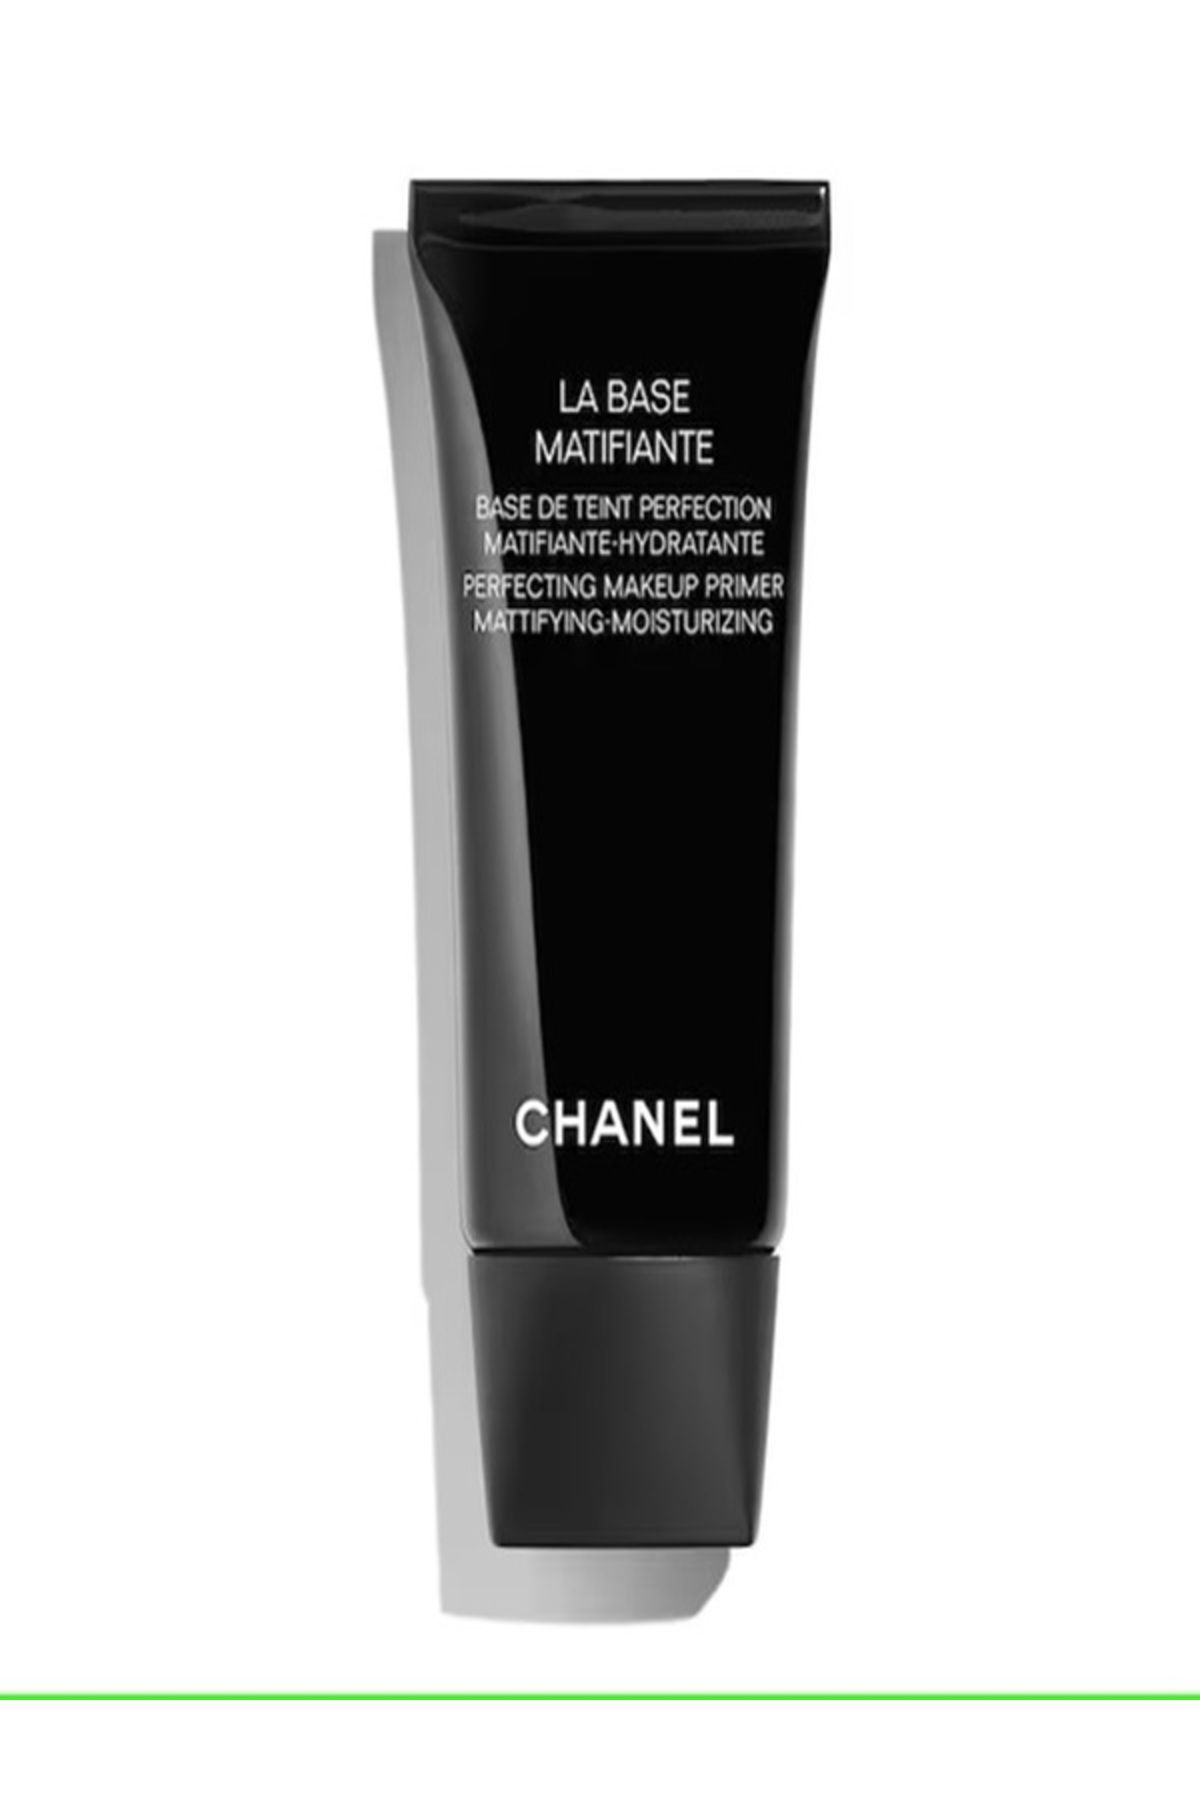 Chanel LA BASE MATIFIANTE-12 Saate Kadar Etkili Nemlendirici Pürüzsüzleştirici Matlaştırıcı Makyaj Bazı